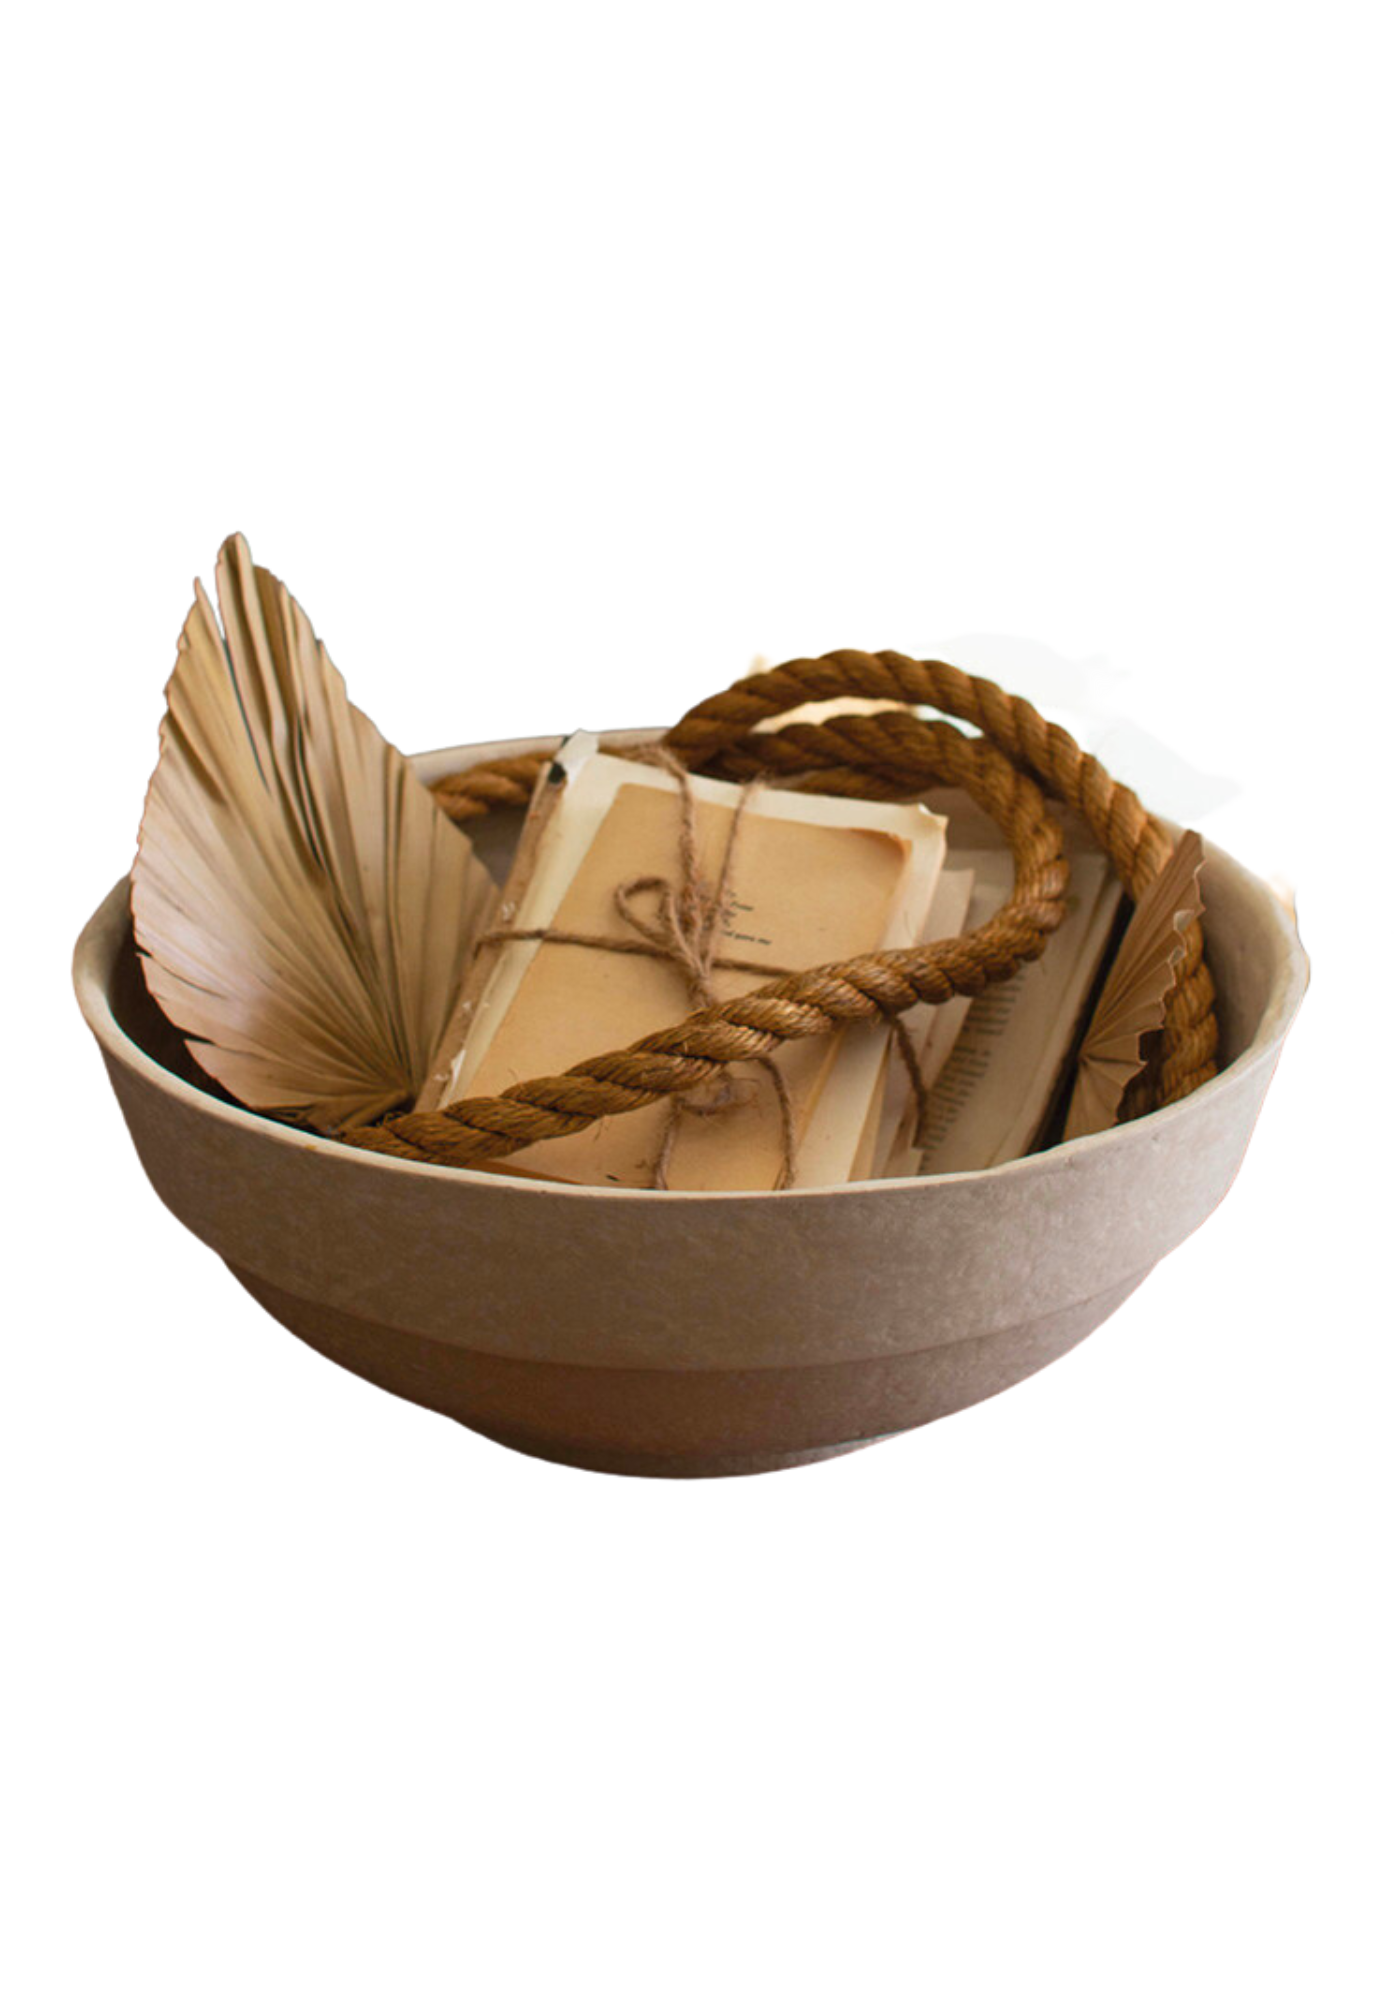 Artisanal Paper Maché Bowl